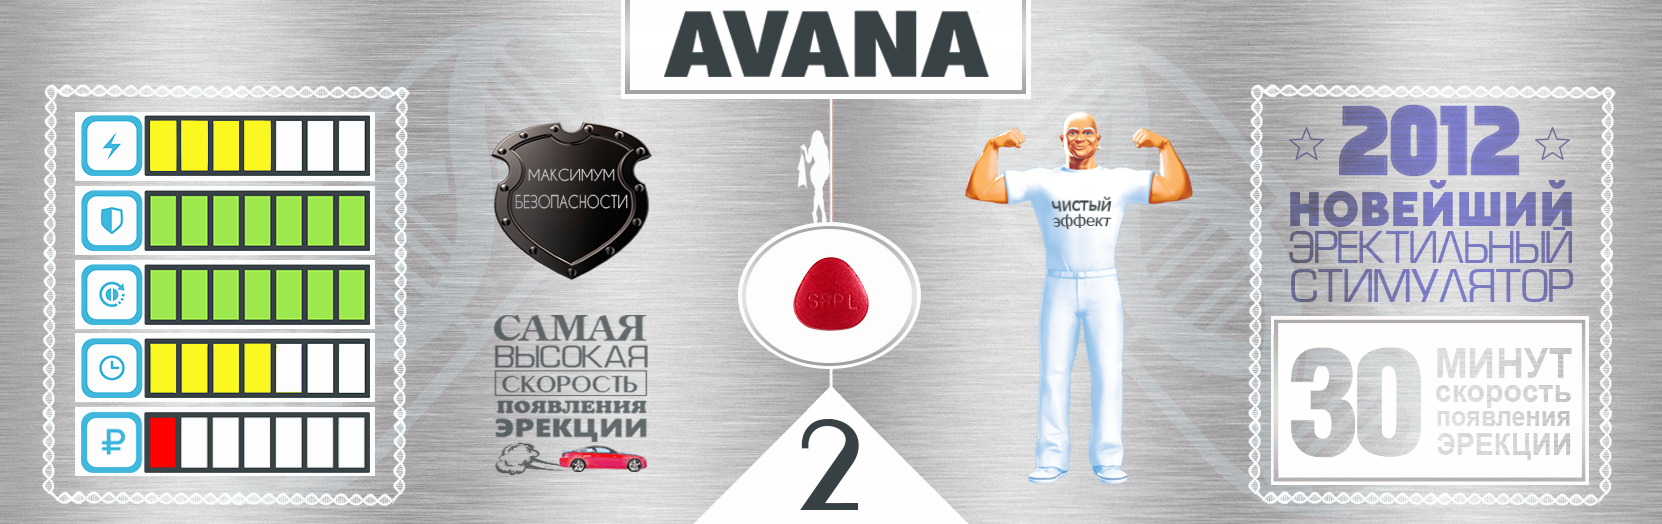 У нас лучшие индийские дженерики, Avana - один из них